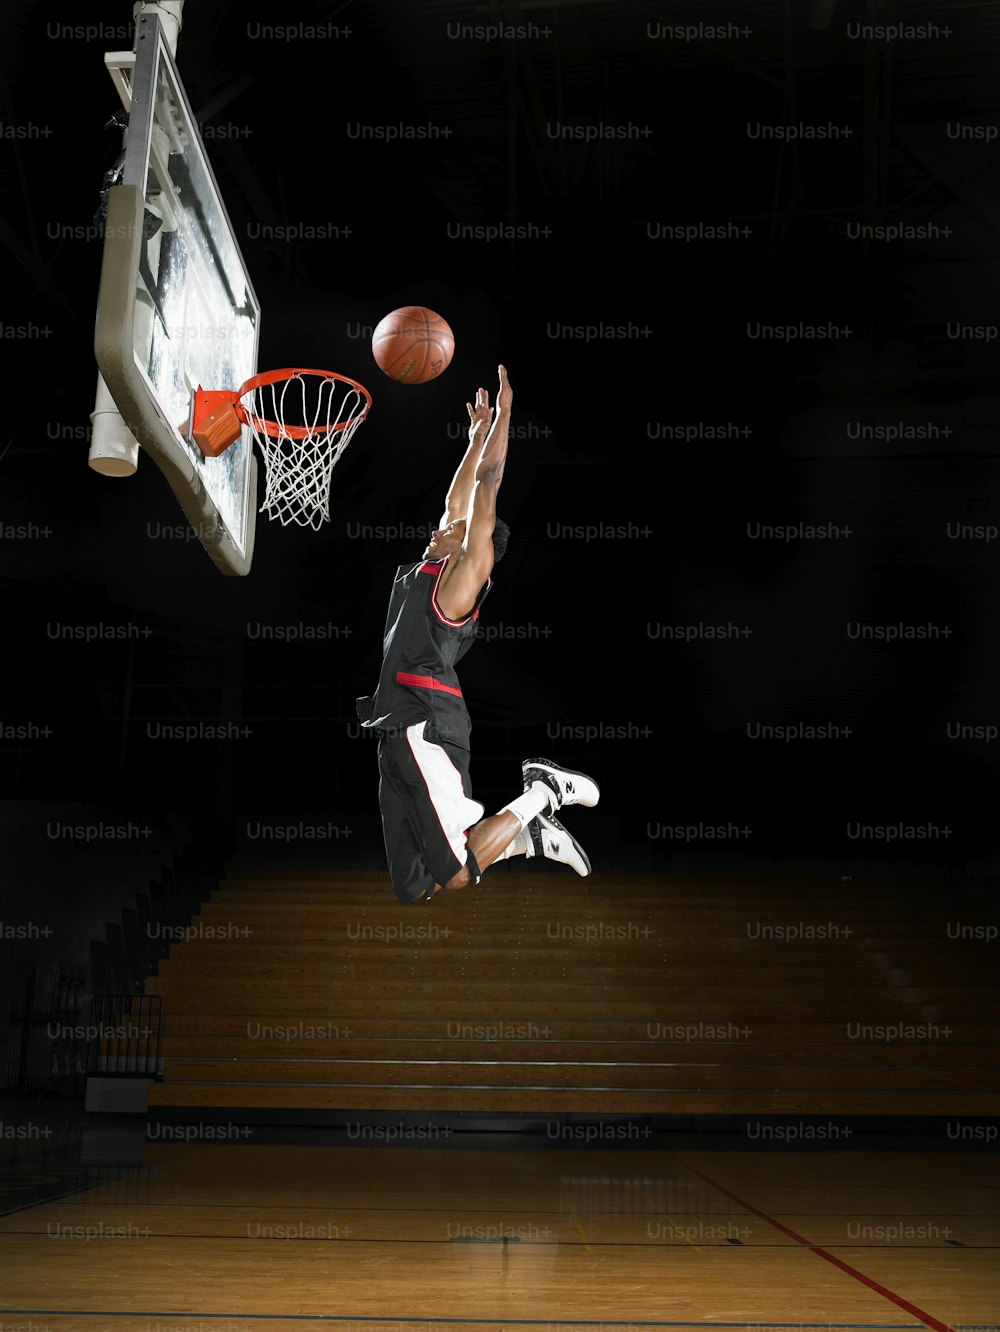 バスケットボールをダンクするために空中に飛び上がる人